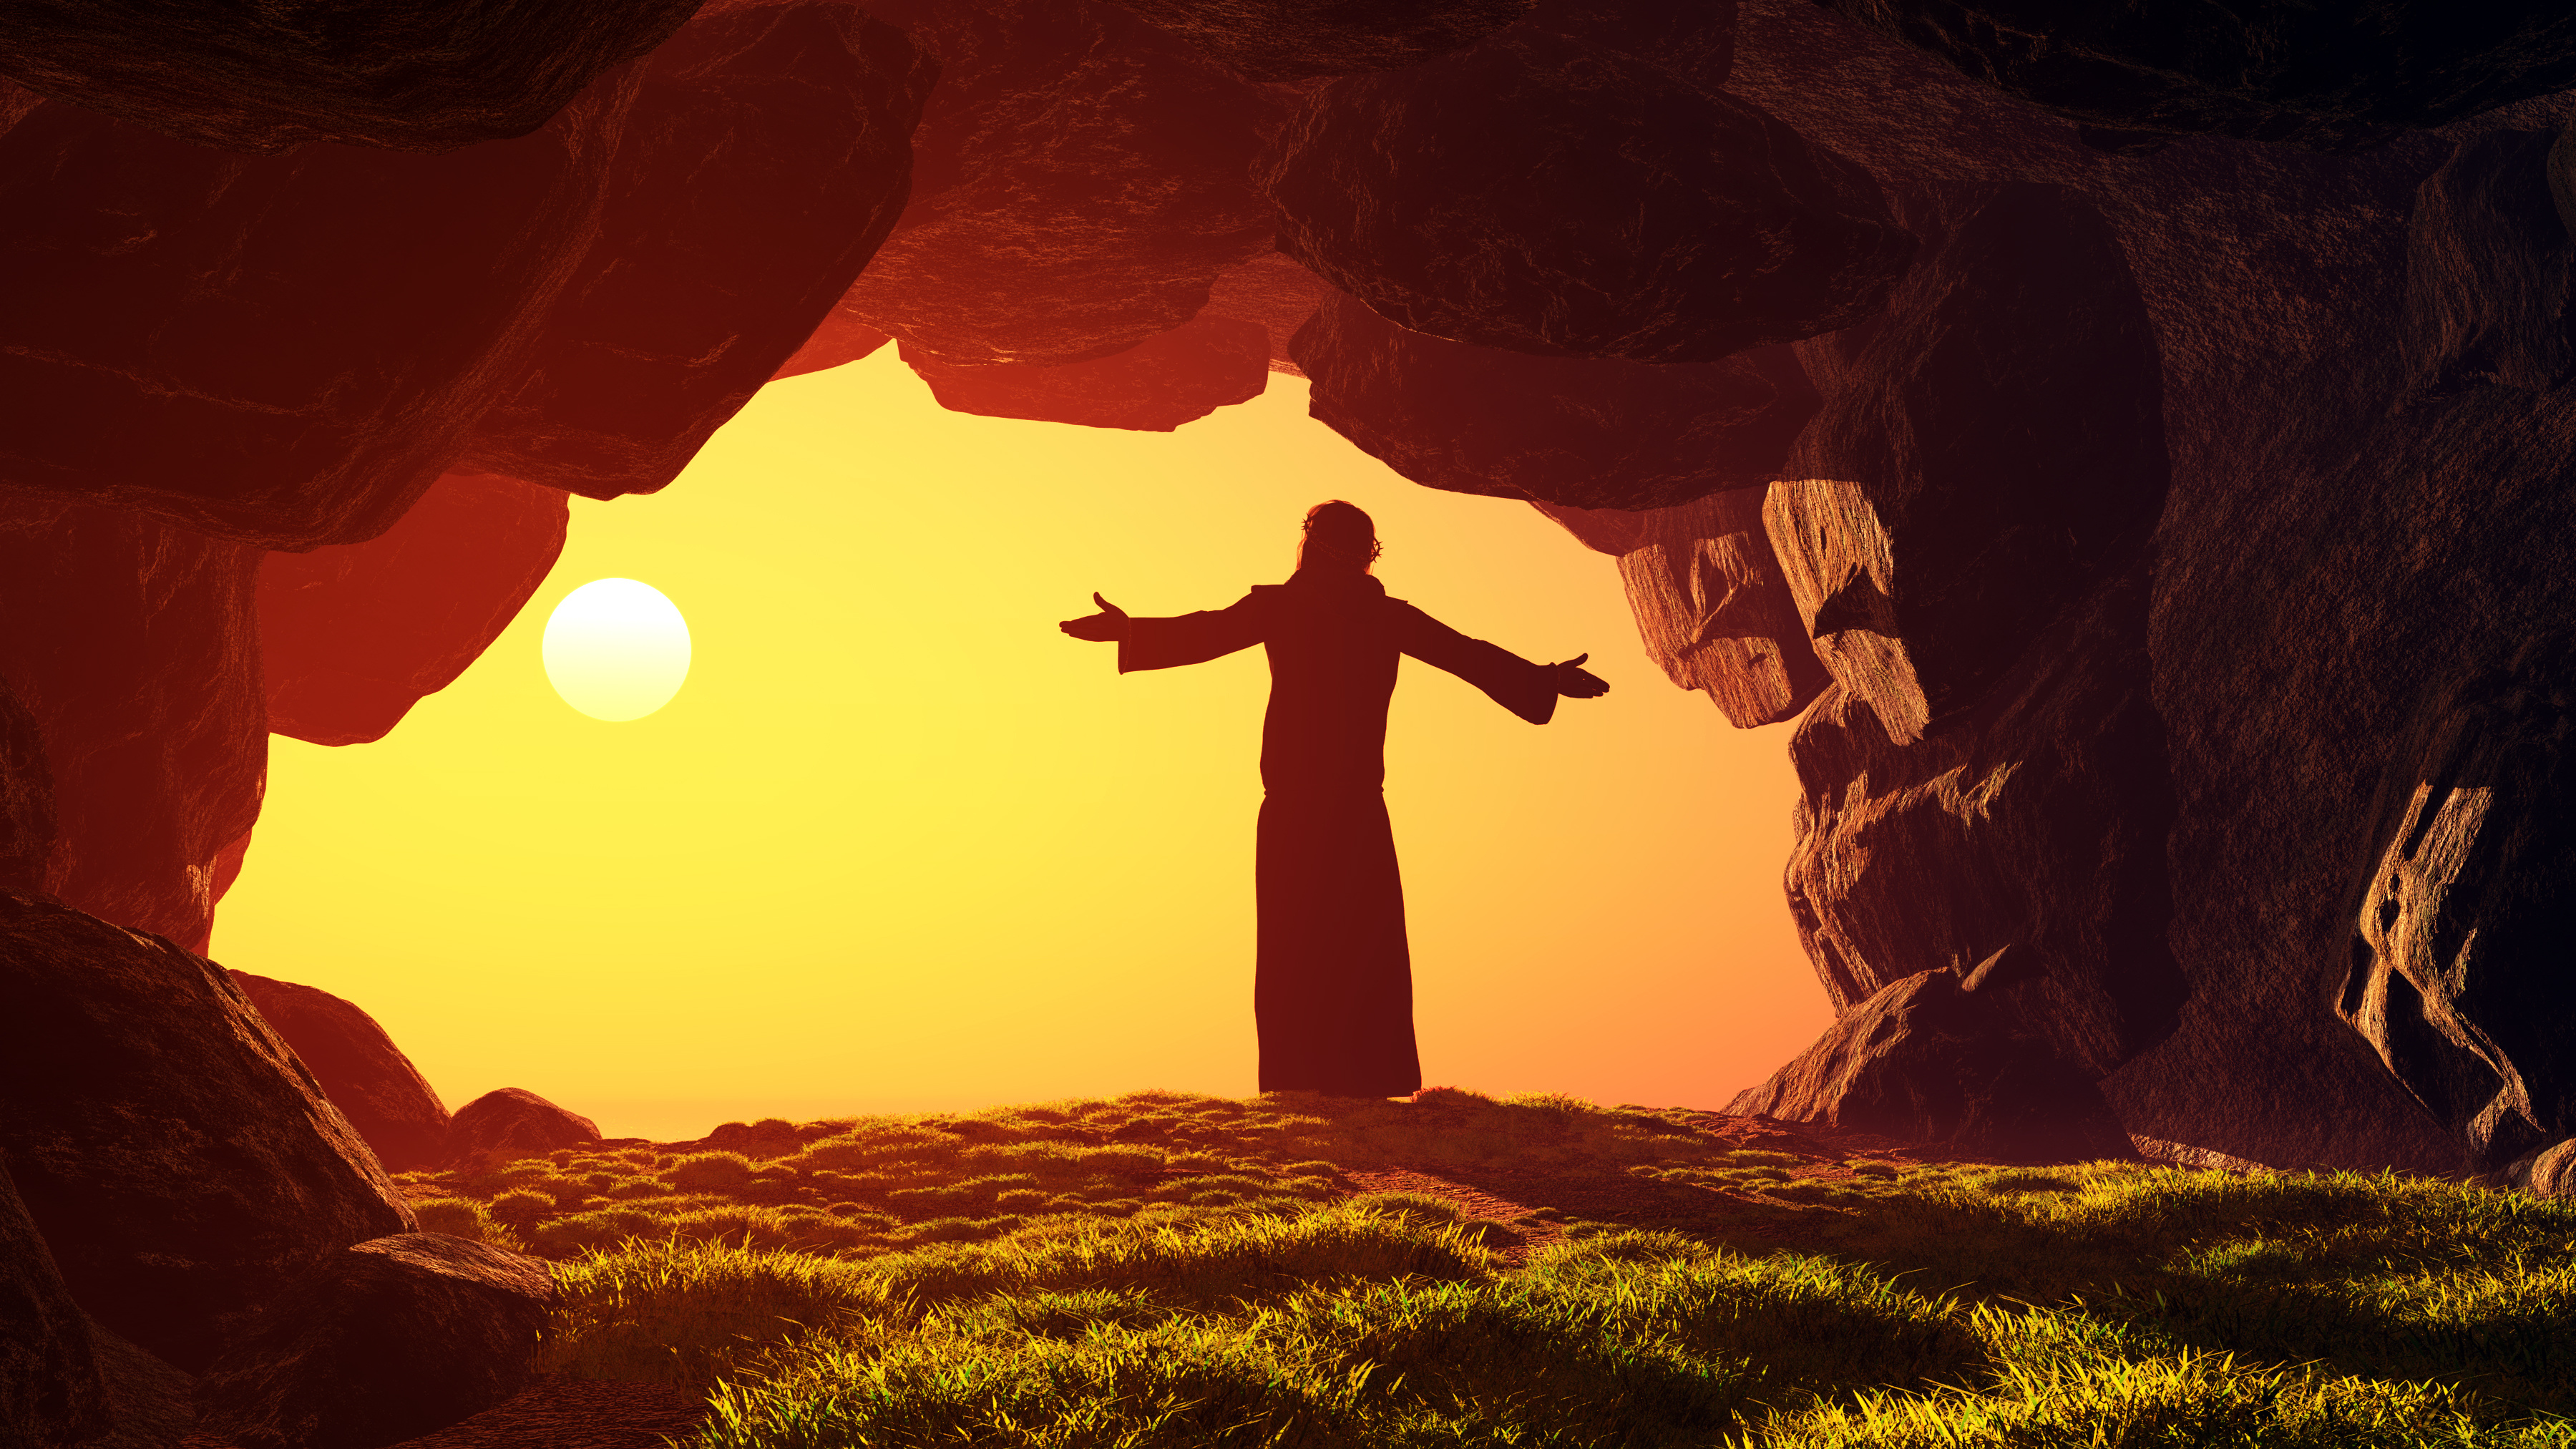 Káº¿t quáº£ hÃ¬nh áº£nh cho ressurreiÃ§Ã£o de jesus